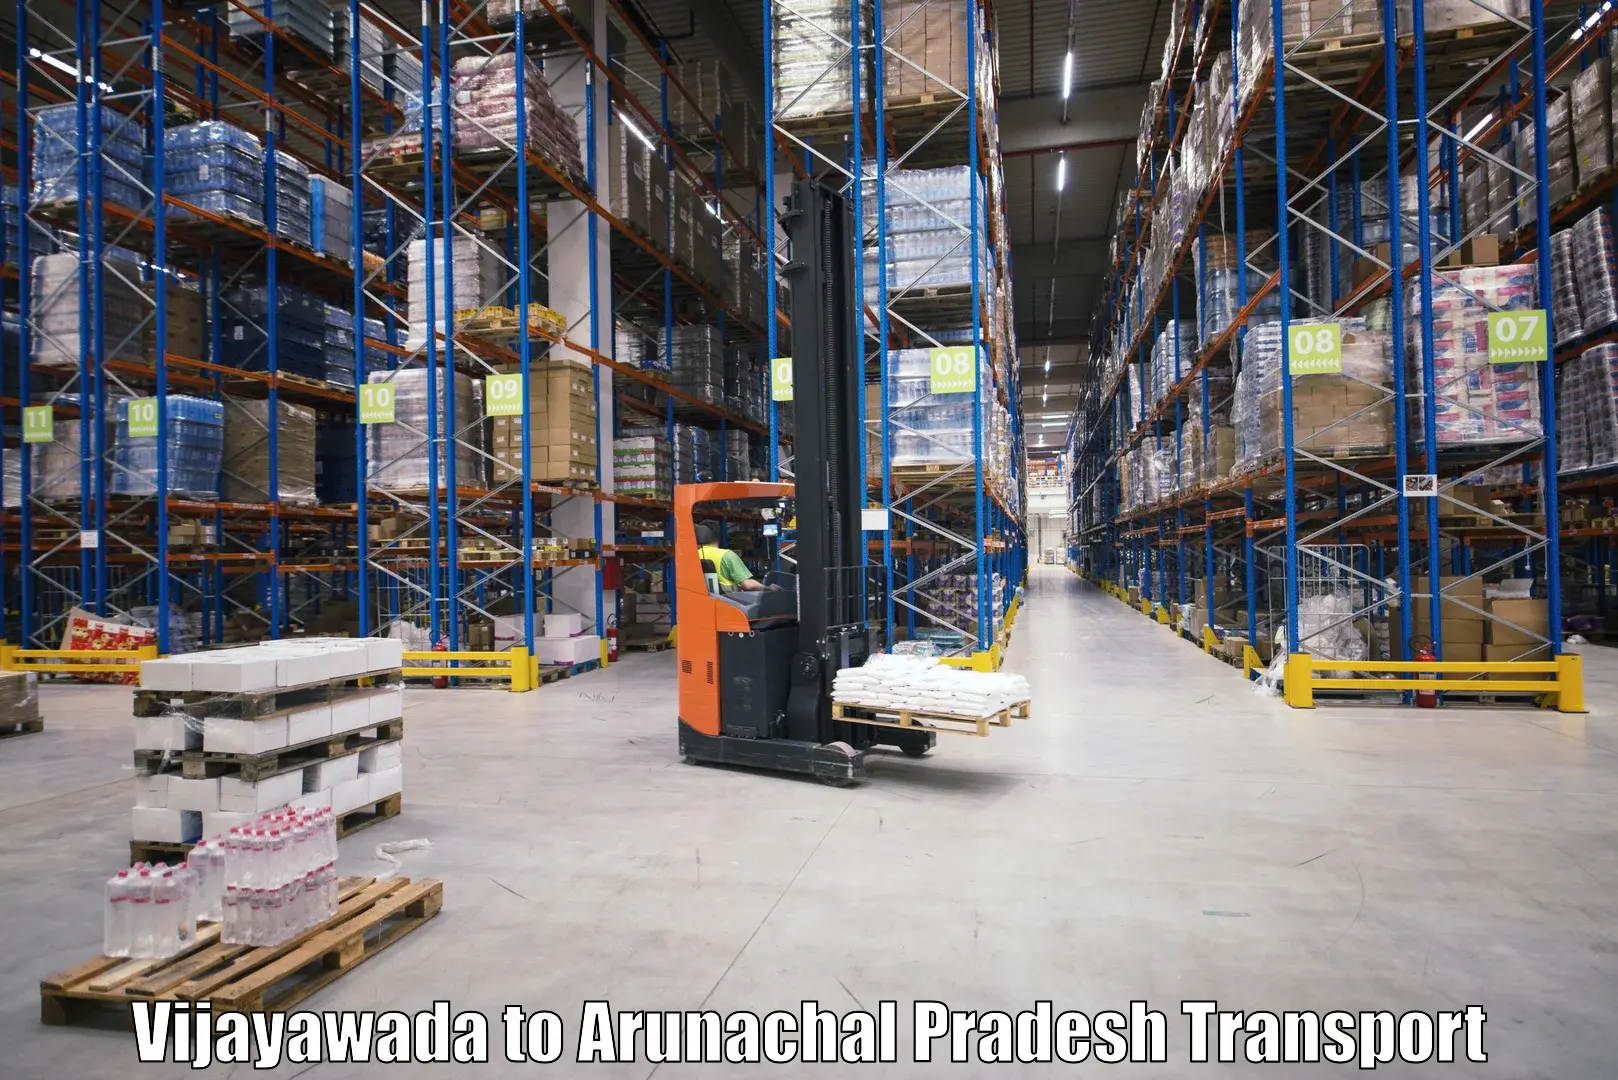 Shipping partner Vijayawada to Arunachal Pradesh